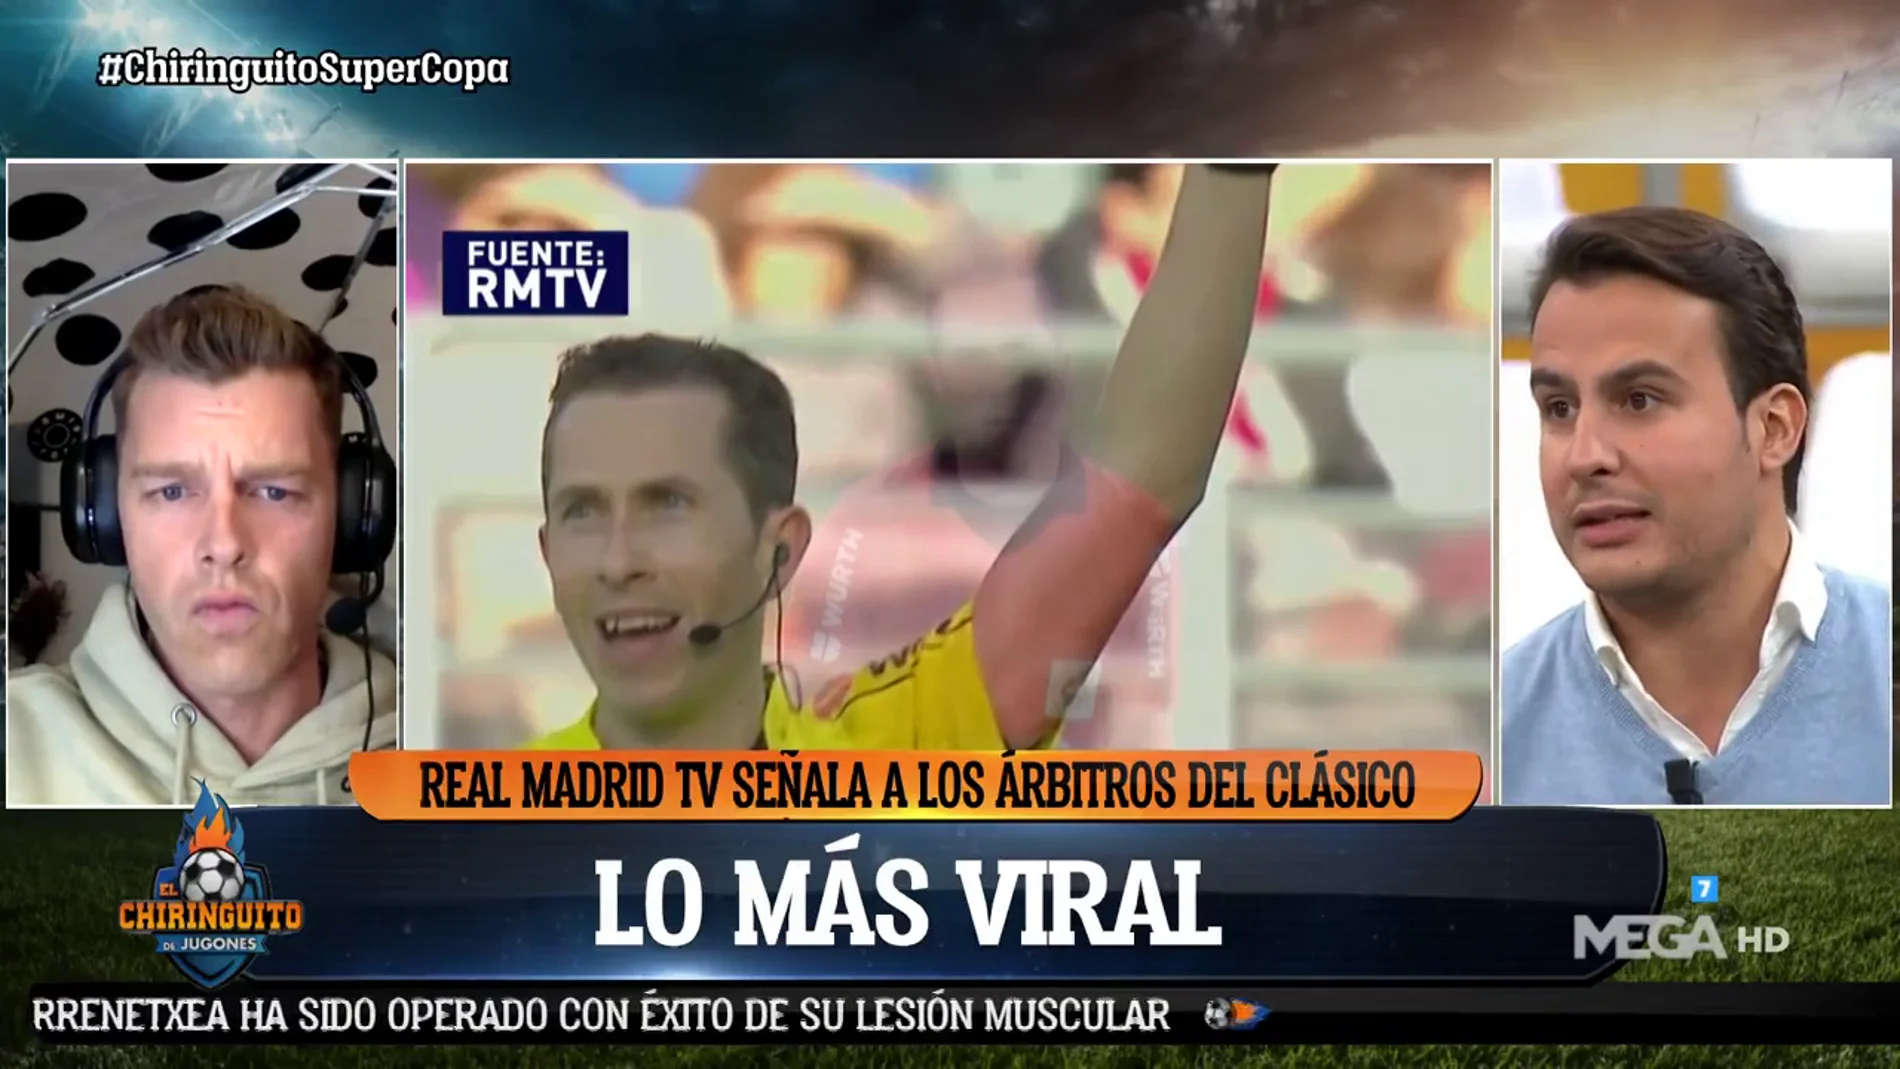 Juanfe: "Los árbitros han visto el video de Real Madrid TV y les parece una vergüenza"